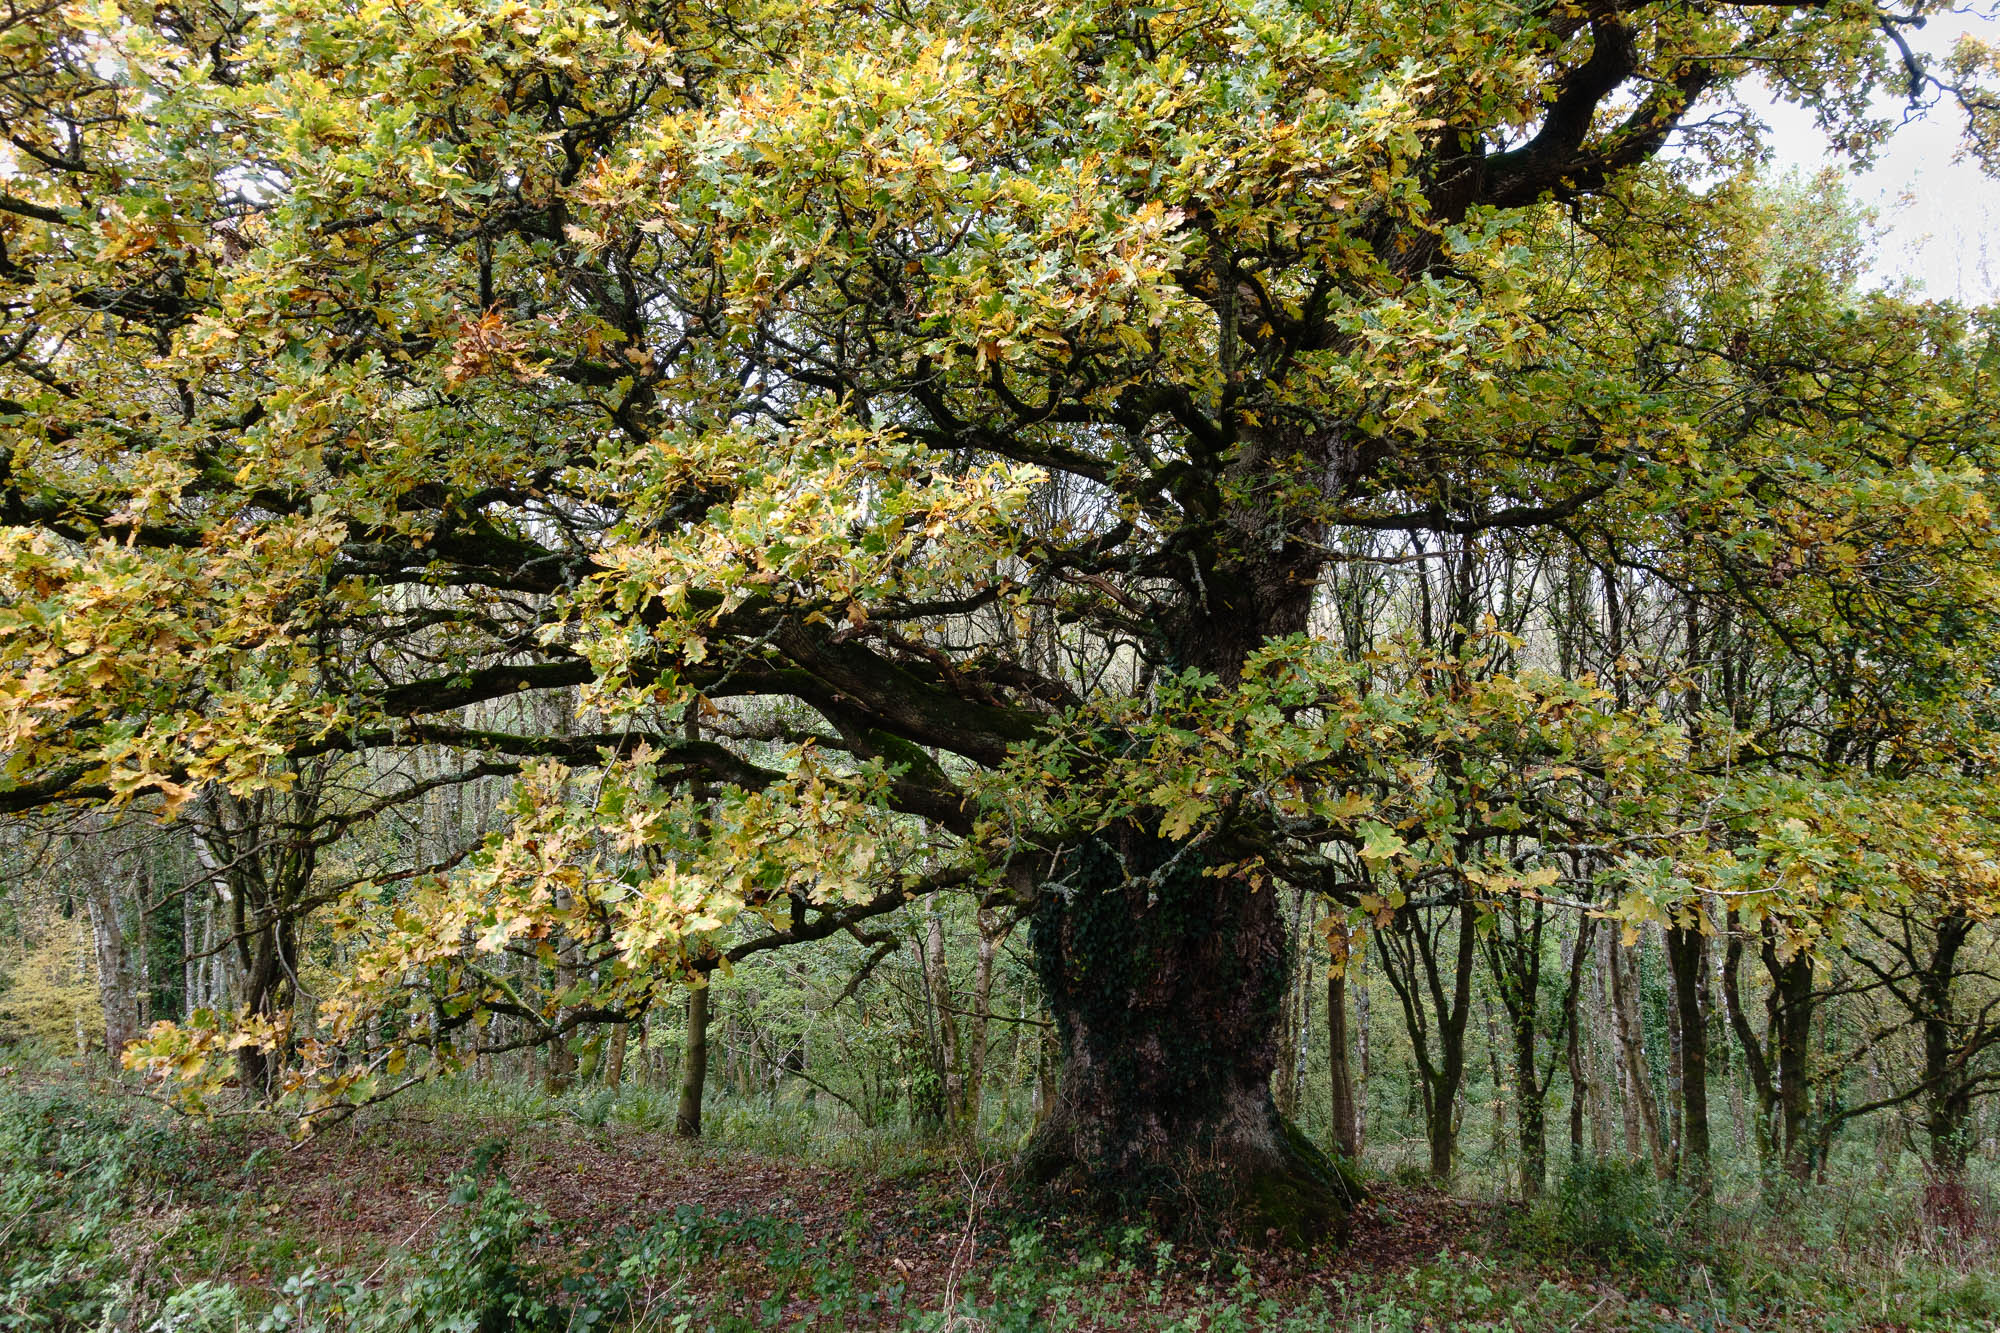 One of many fine oak trees